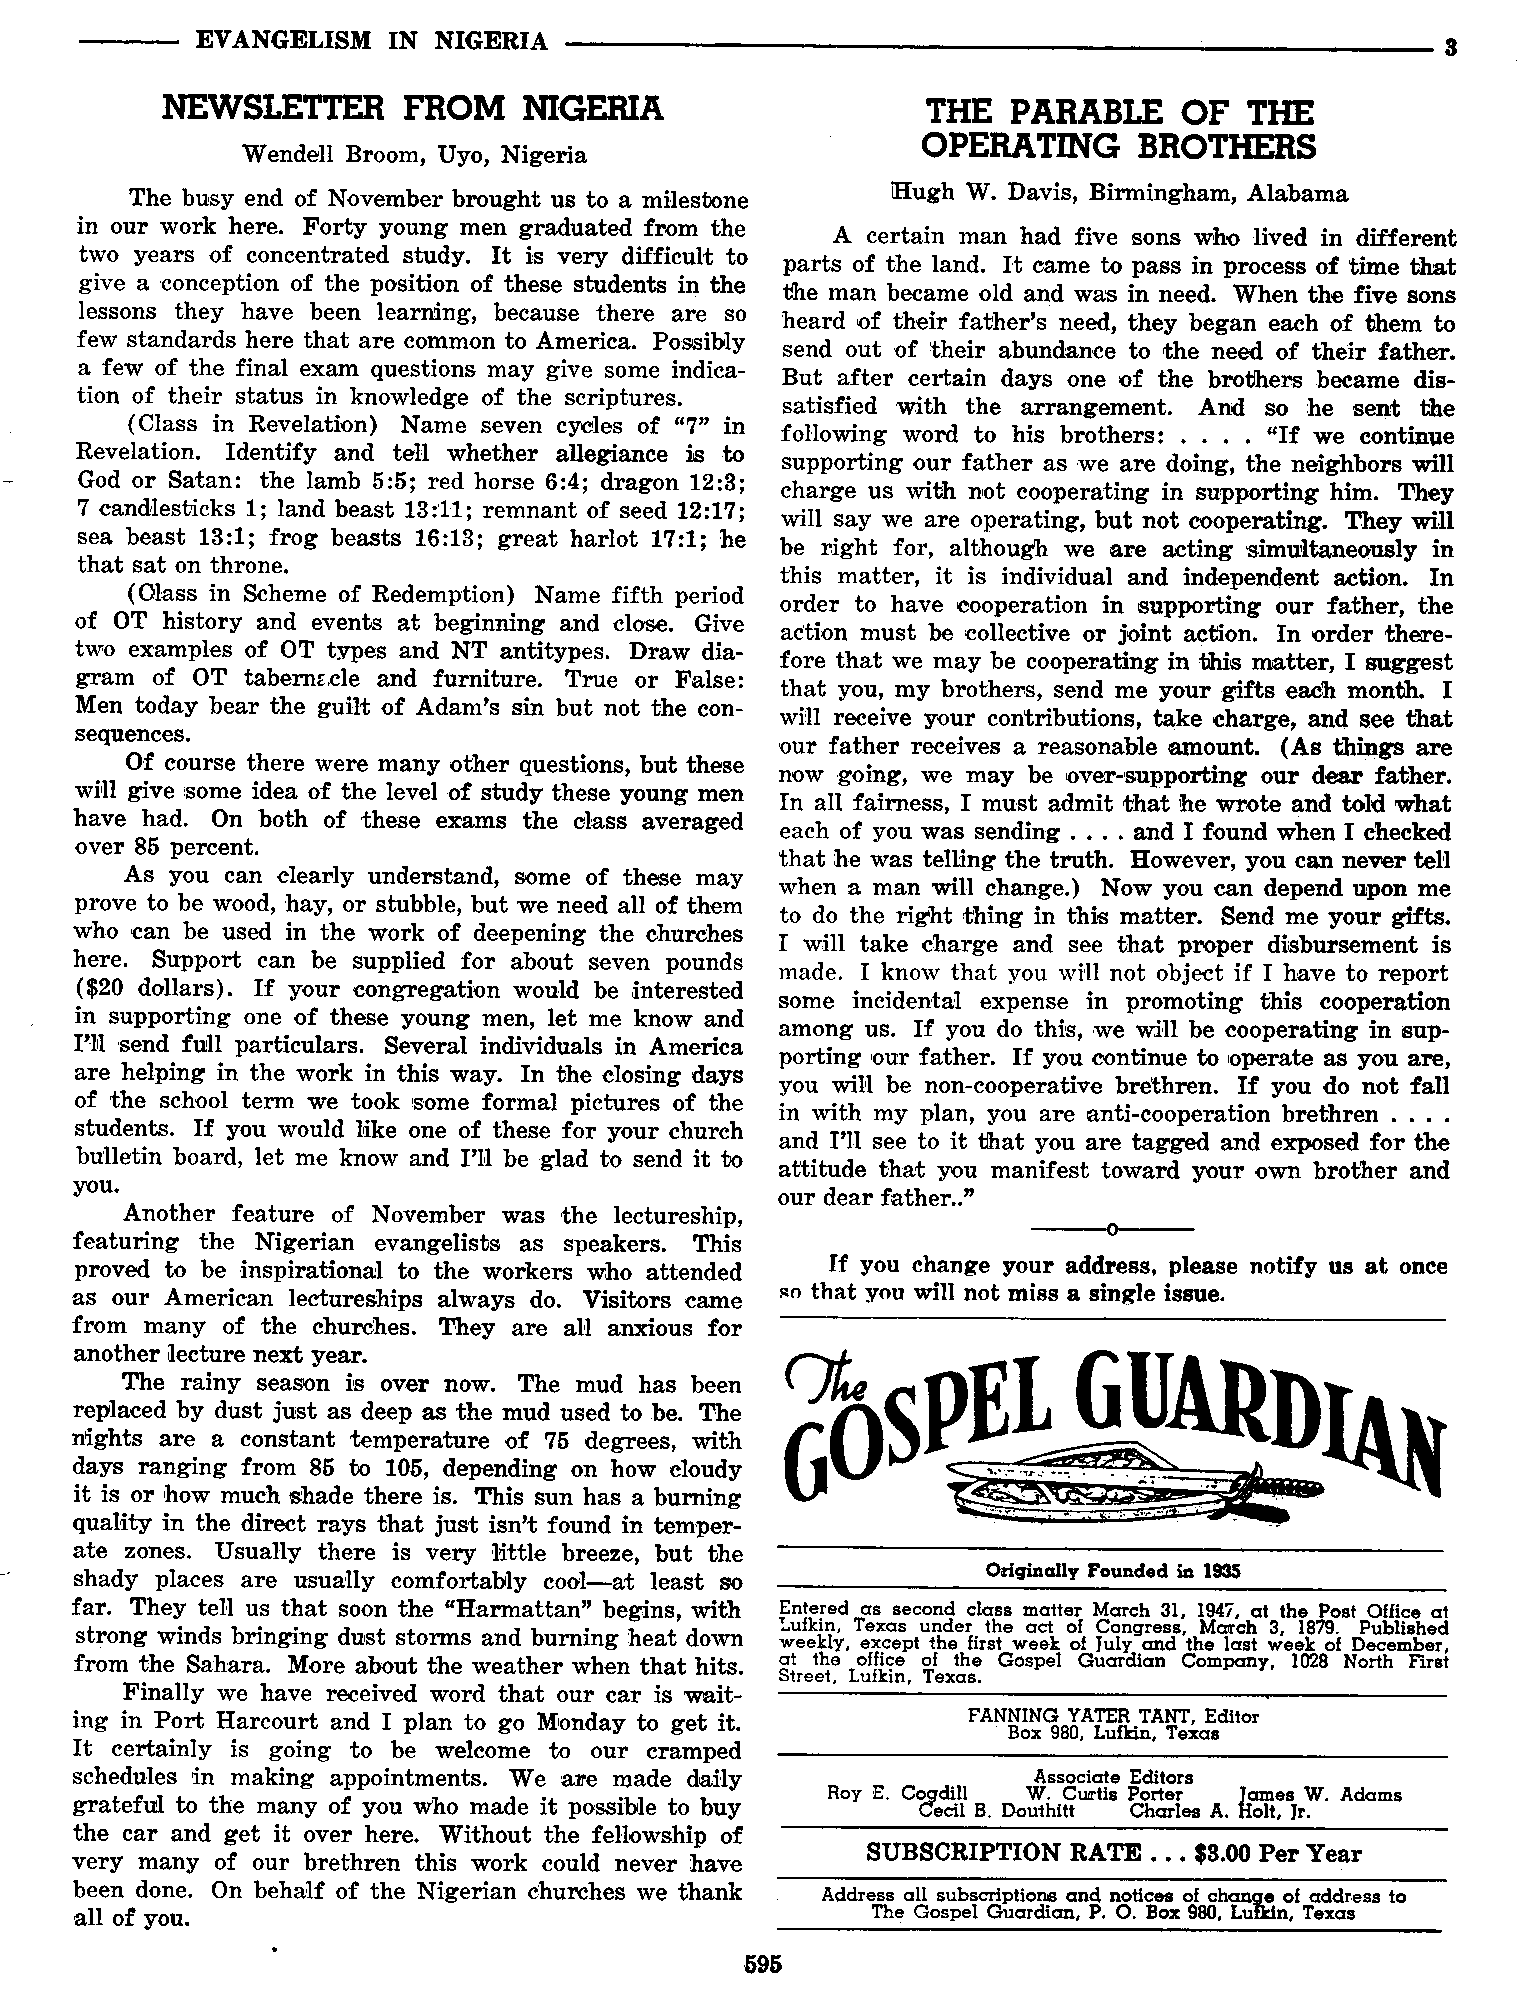 Gospel Guardian Original: Vol.7 No.38 Pg.3